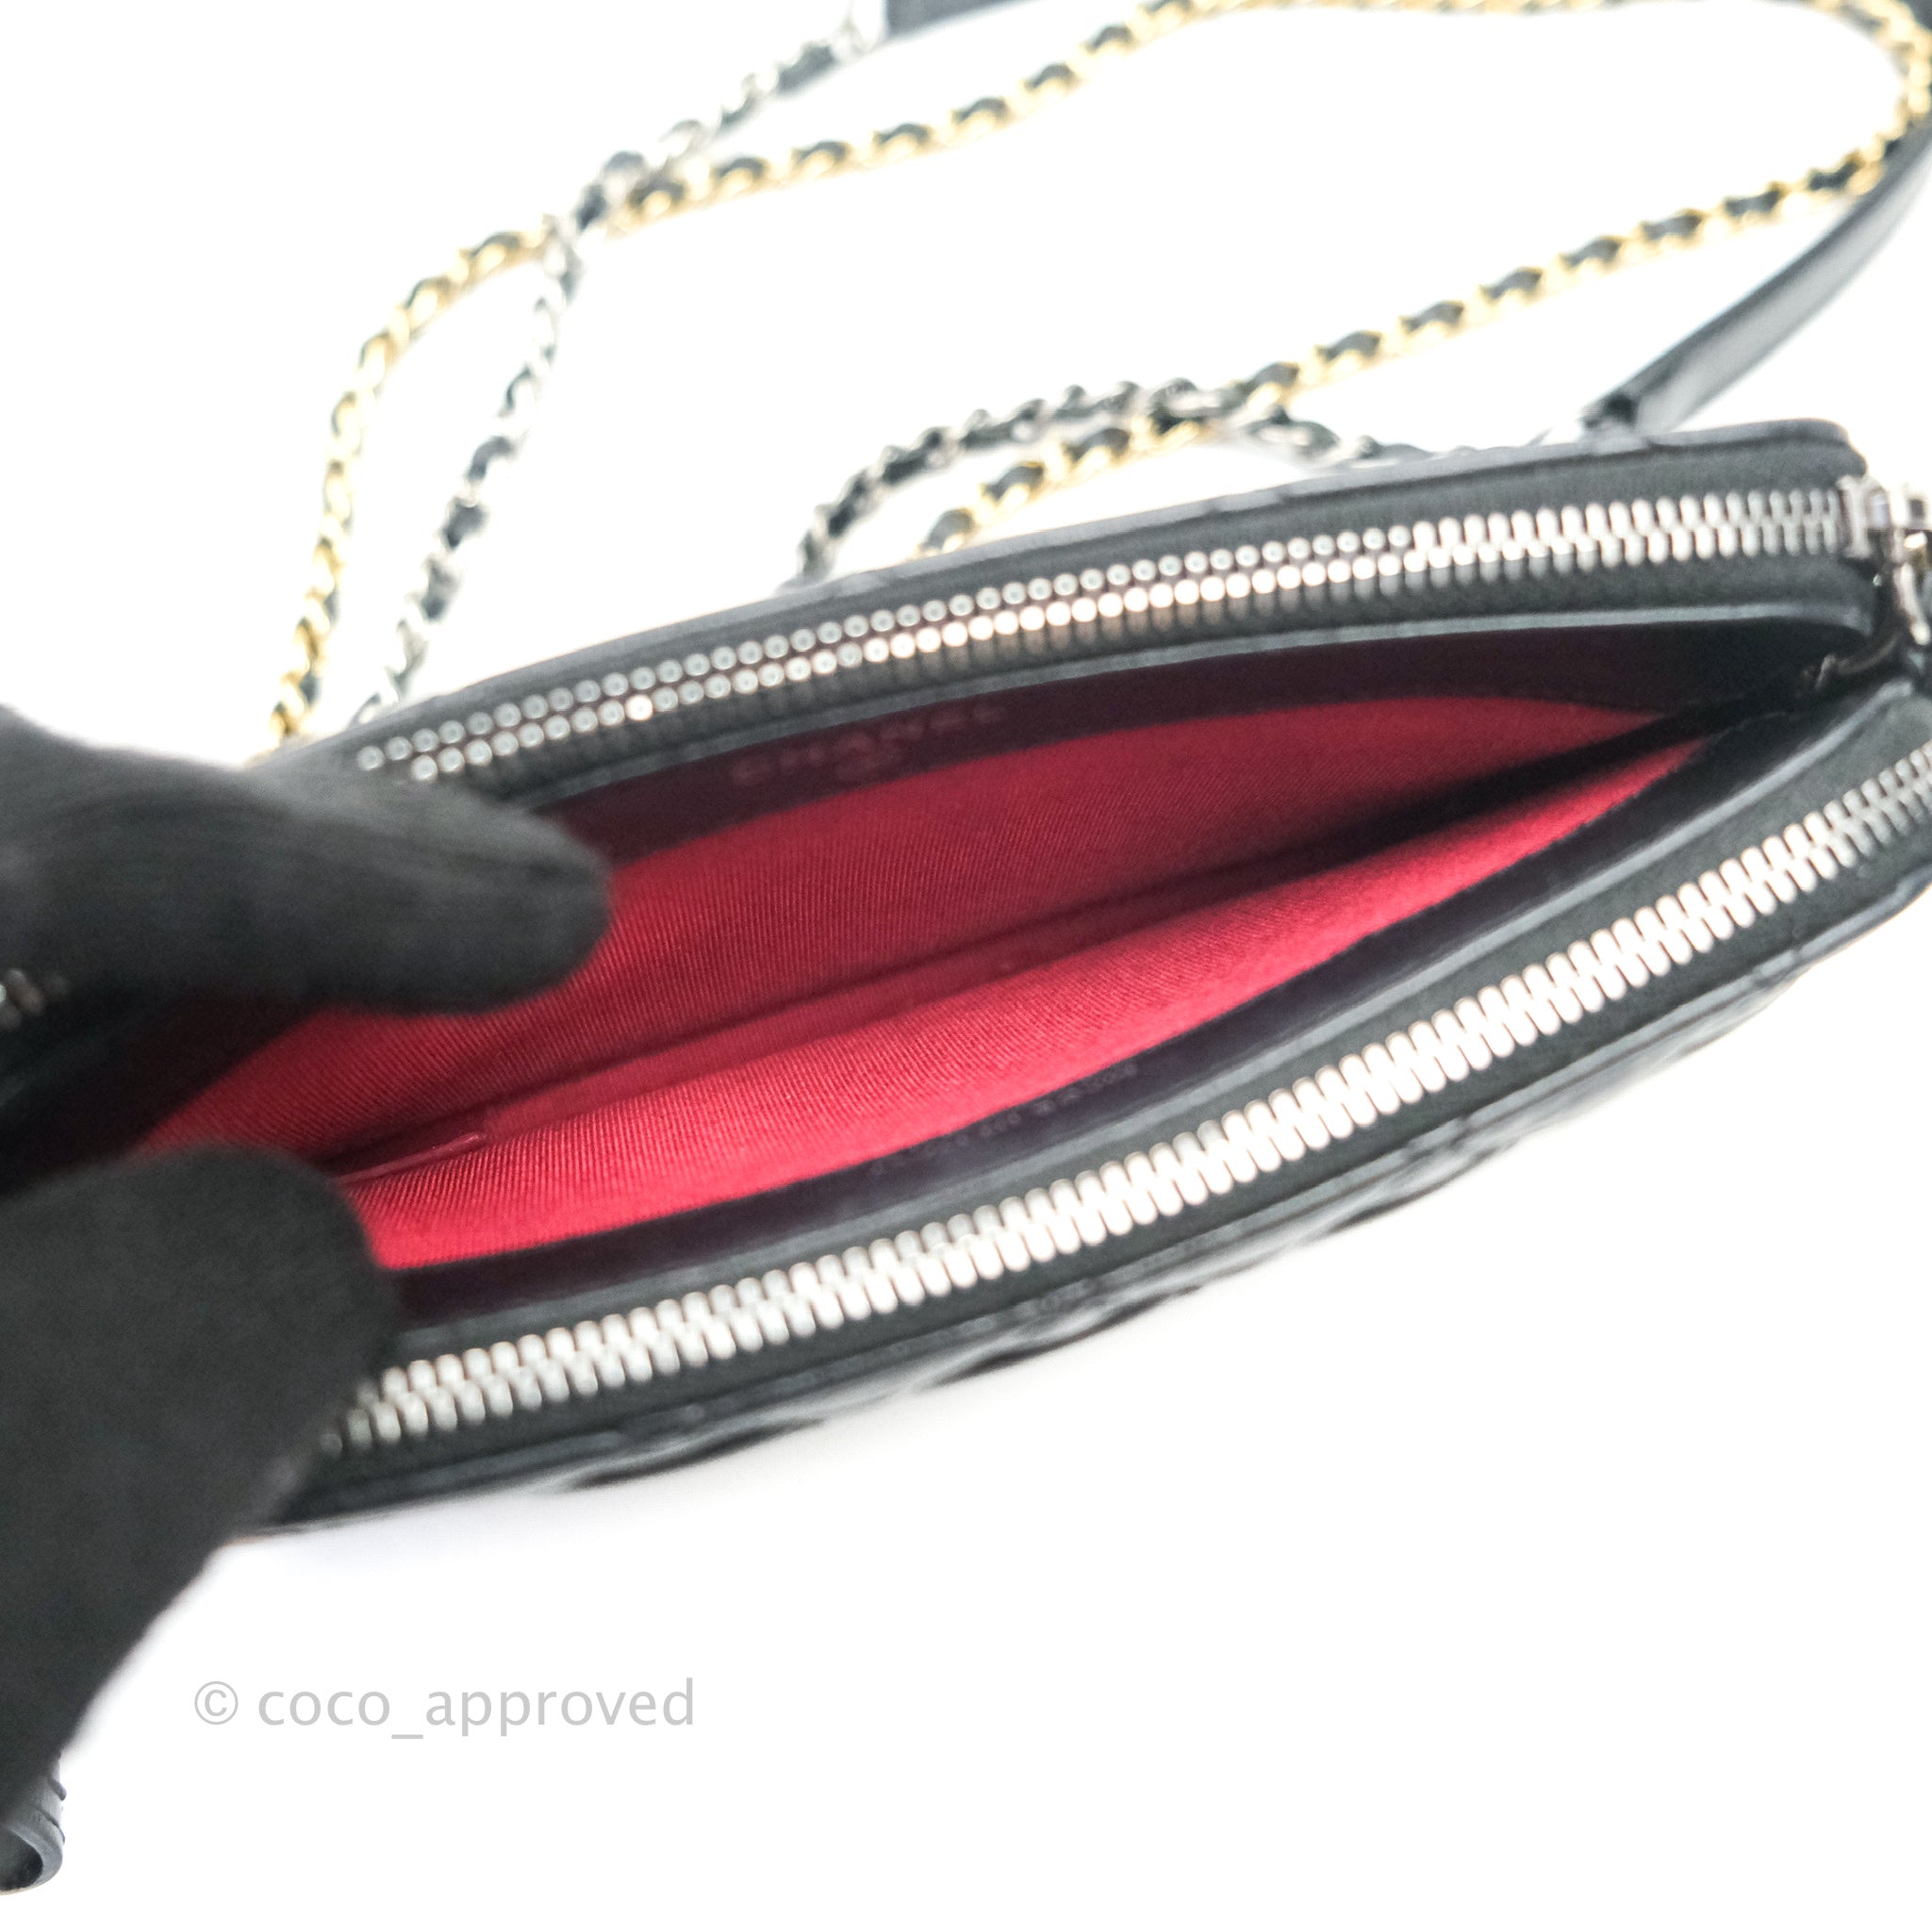 Chloé Gabrielle Clutch Bag in Black Leather ref.899796 - Joli Closet